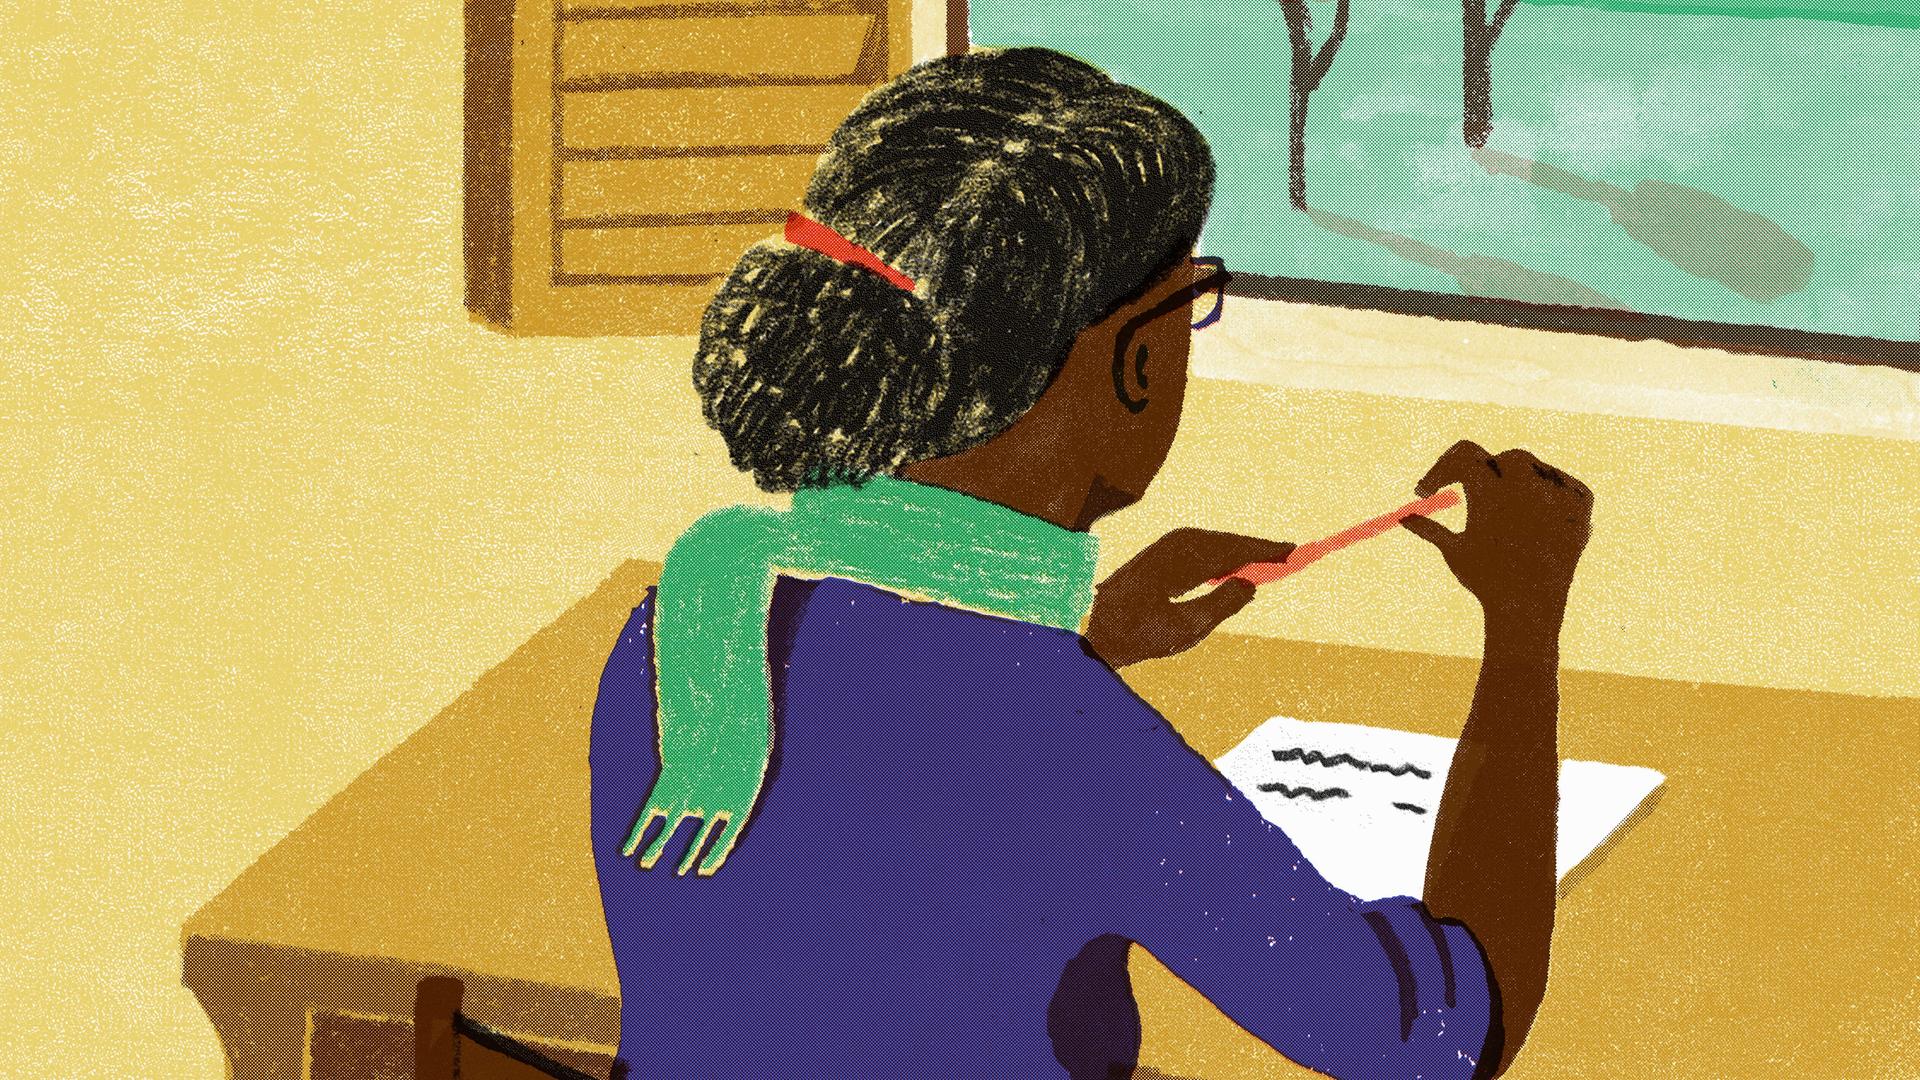 Die Illustration zeigt eine Frau am Schreibtisch, die nachdenklich aus dem Fenster starrt.